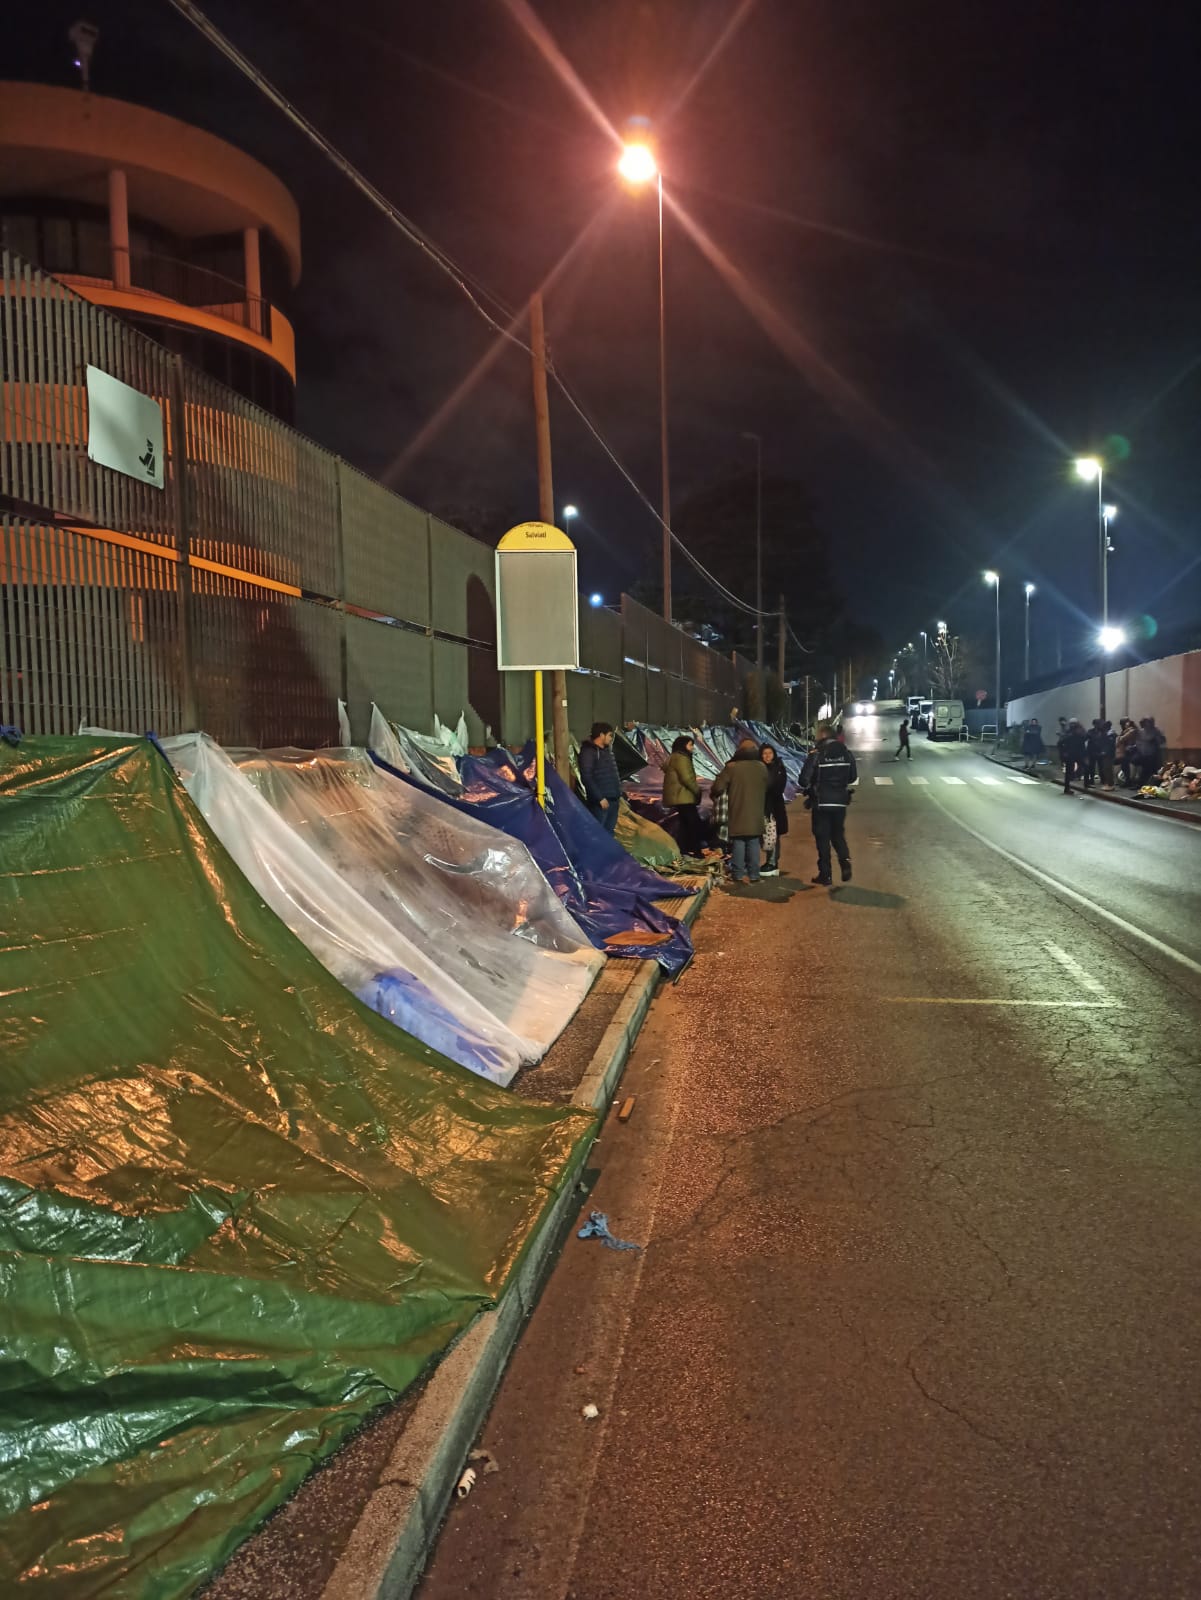 Roma, tendopoli davanti all'Ufficio Immigrazione. I vigili: "Viabilità a rischio" (VIDEO) 1